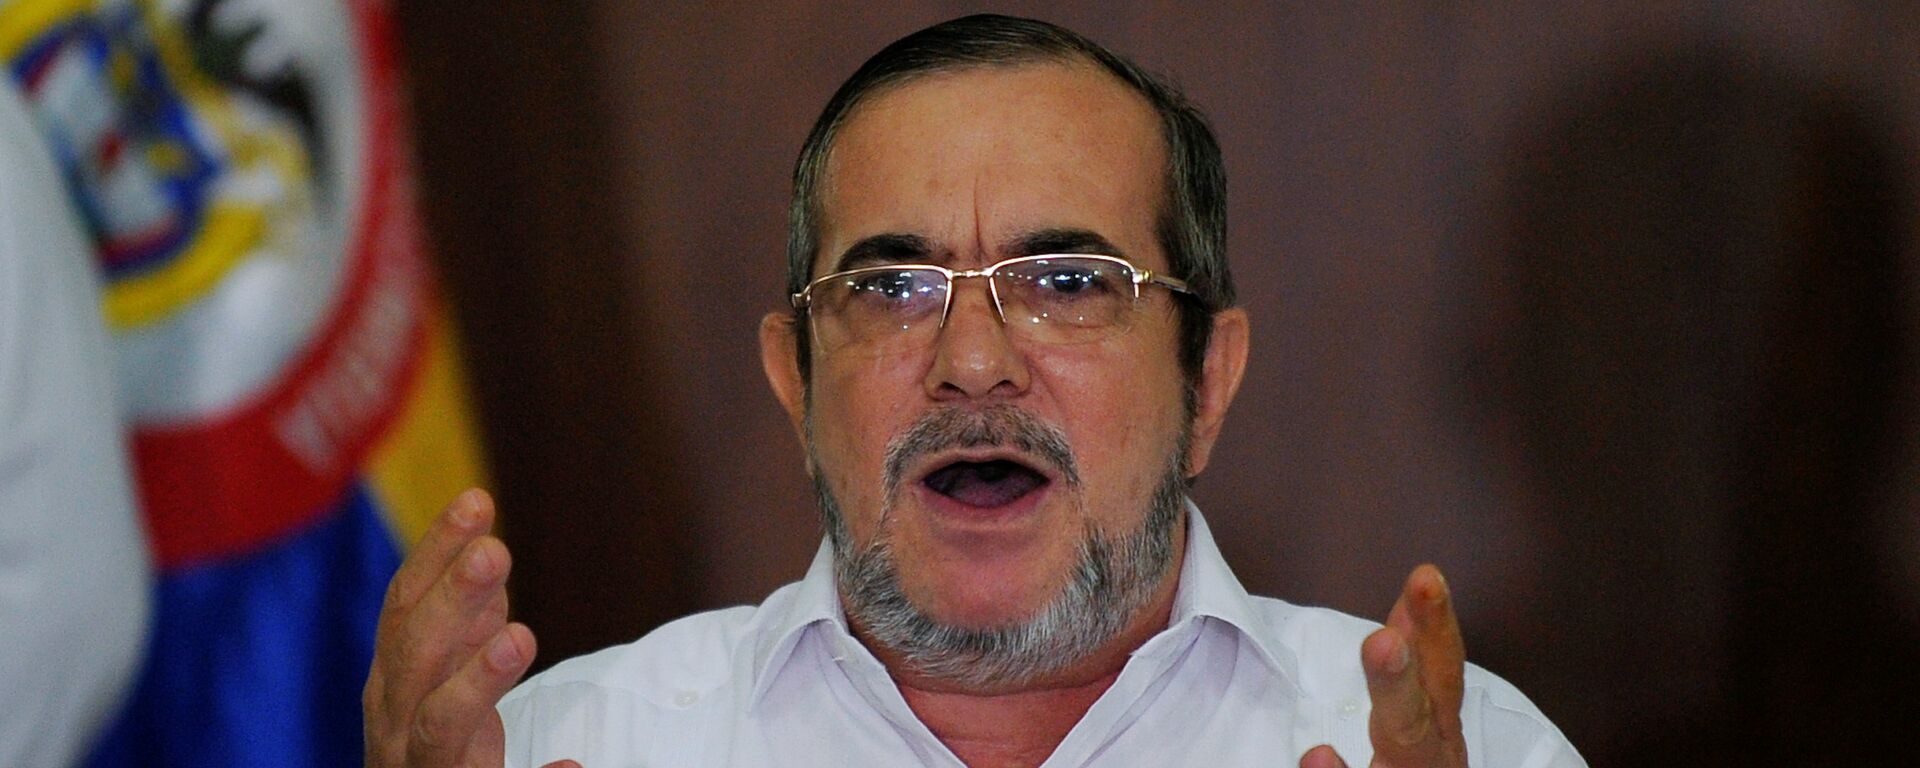 Rodrigo Londoño, alias 'Timochenko', el líder del partido colombiano FARC  - Sputnik Mundo, 1920, 27.03.2021